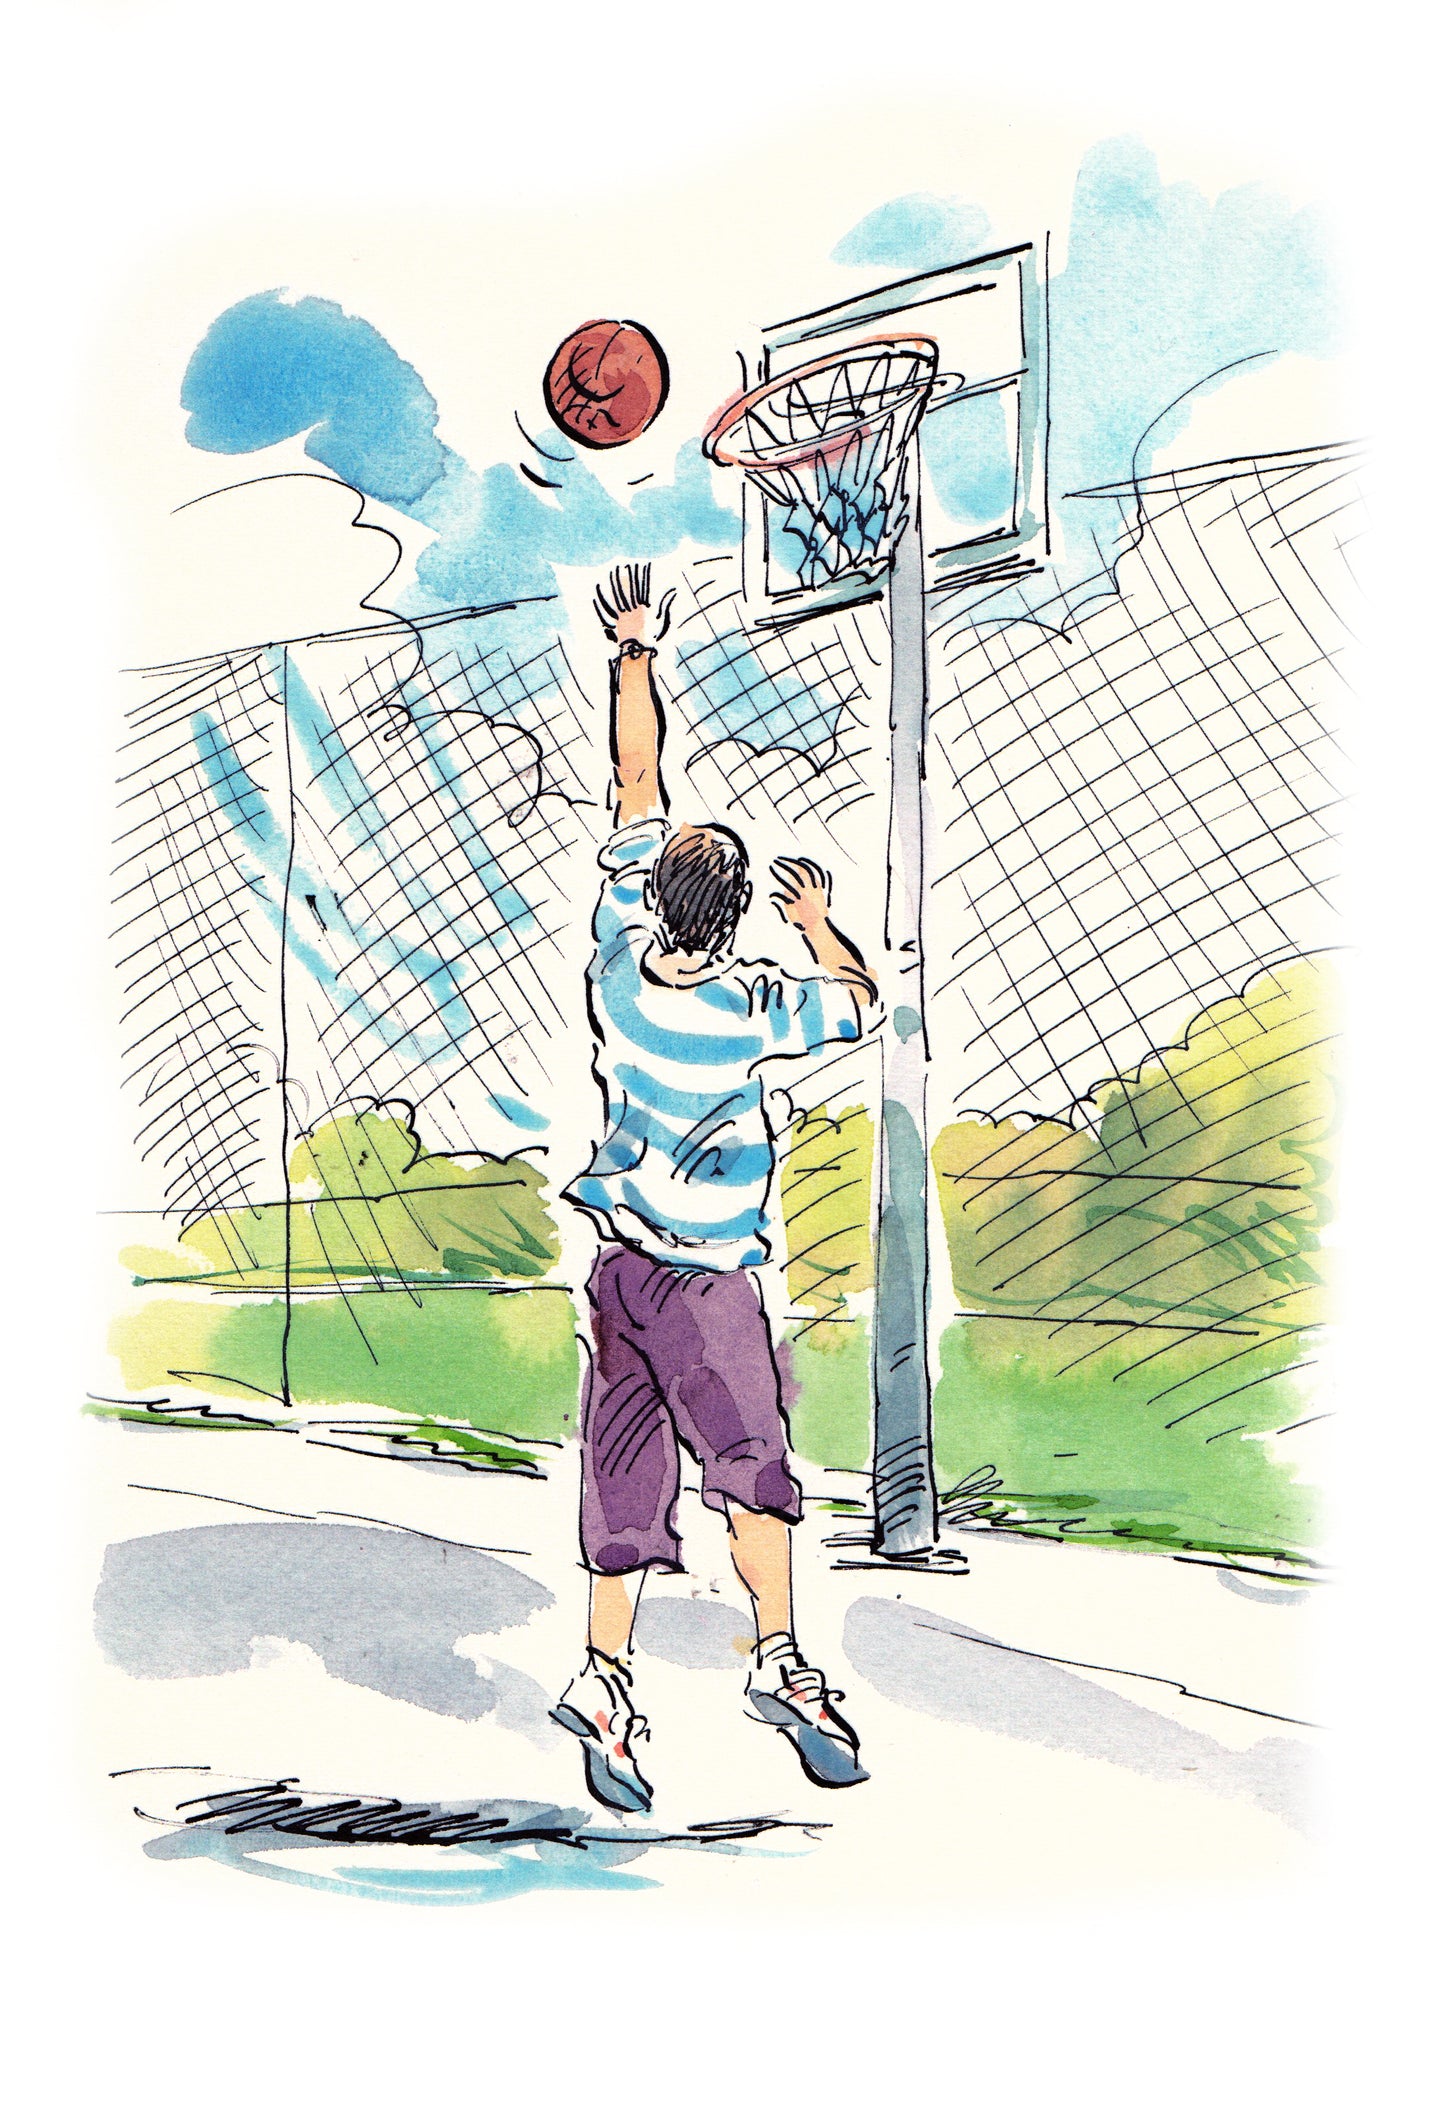 Image 69: Basketball